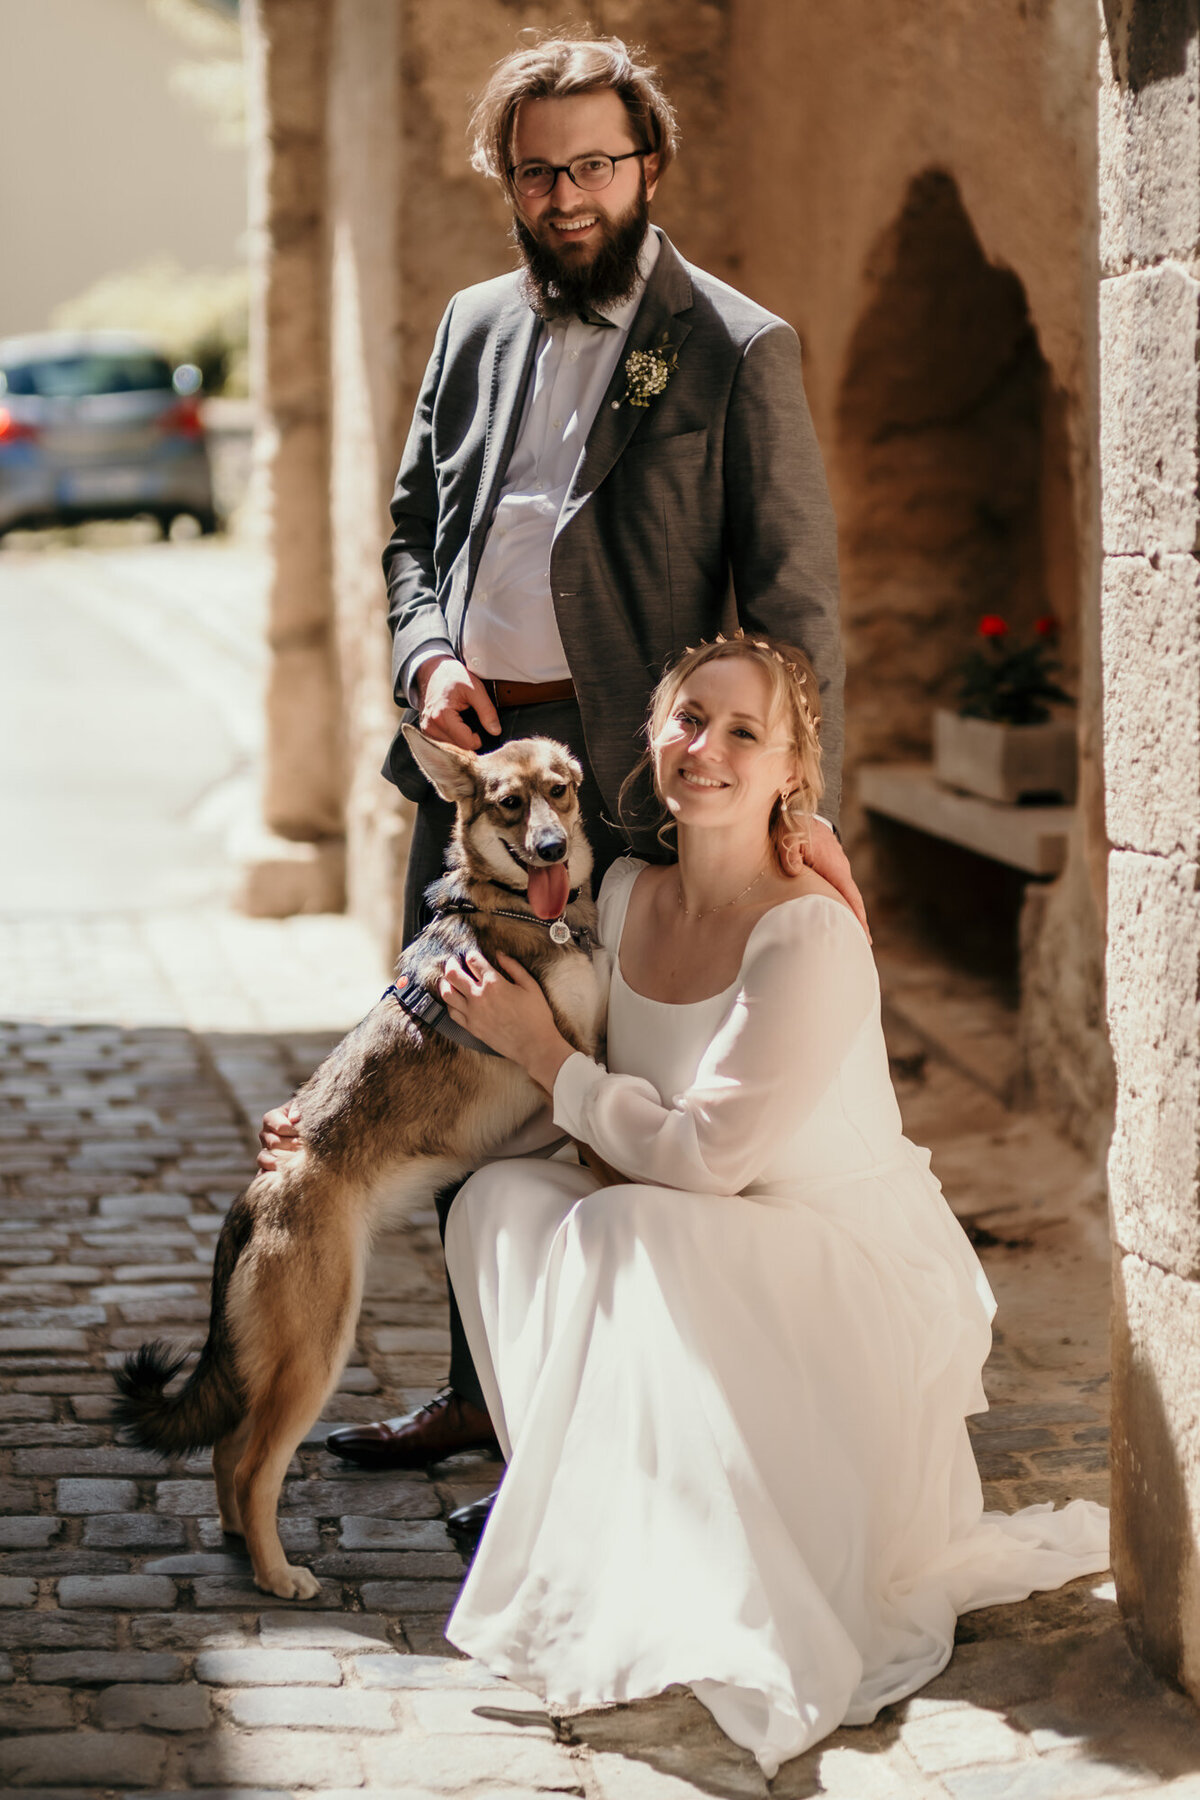 Der Bräutigam steht hinter der knieenden Braut, ihr Hund steht mit den Vorderbeinen auf ihr.